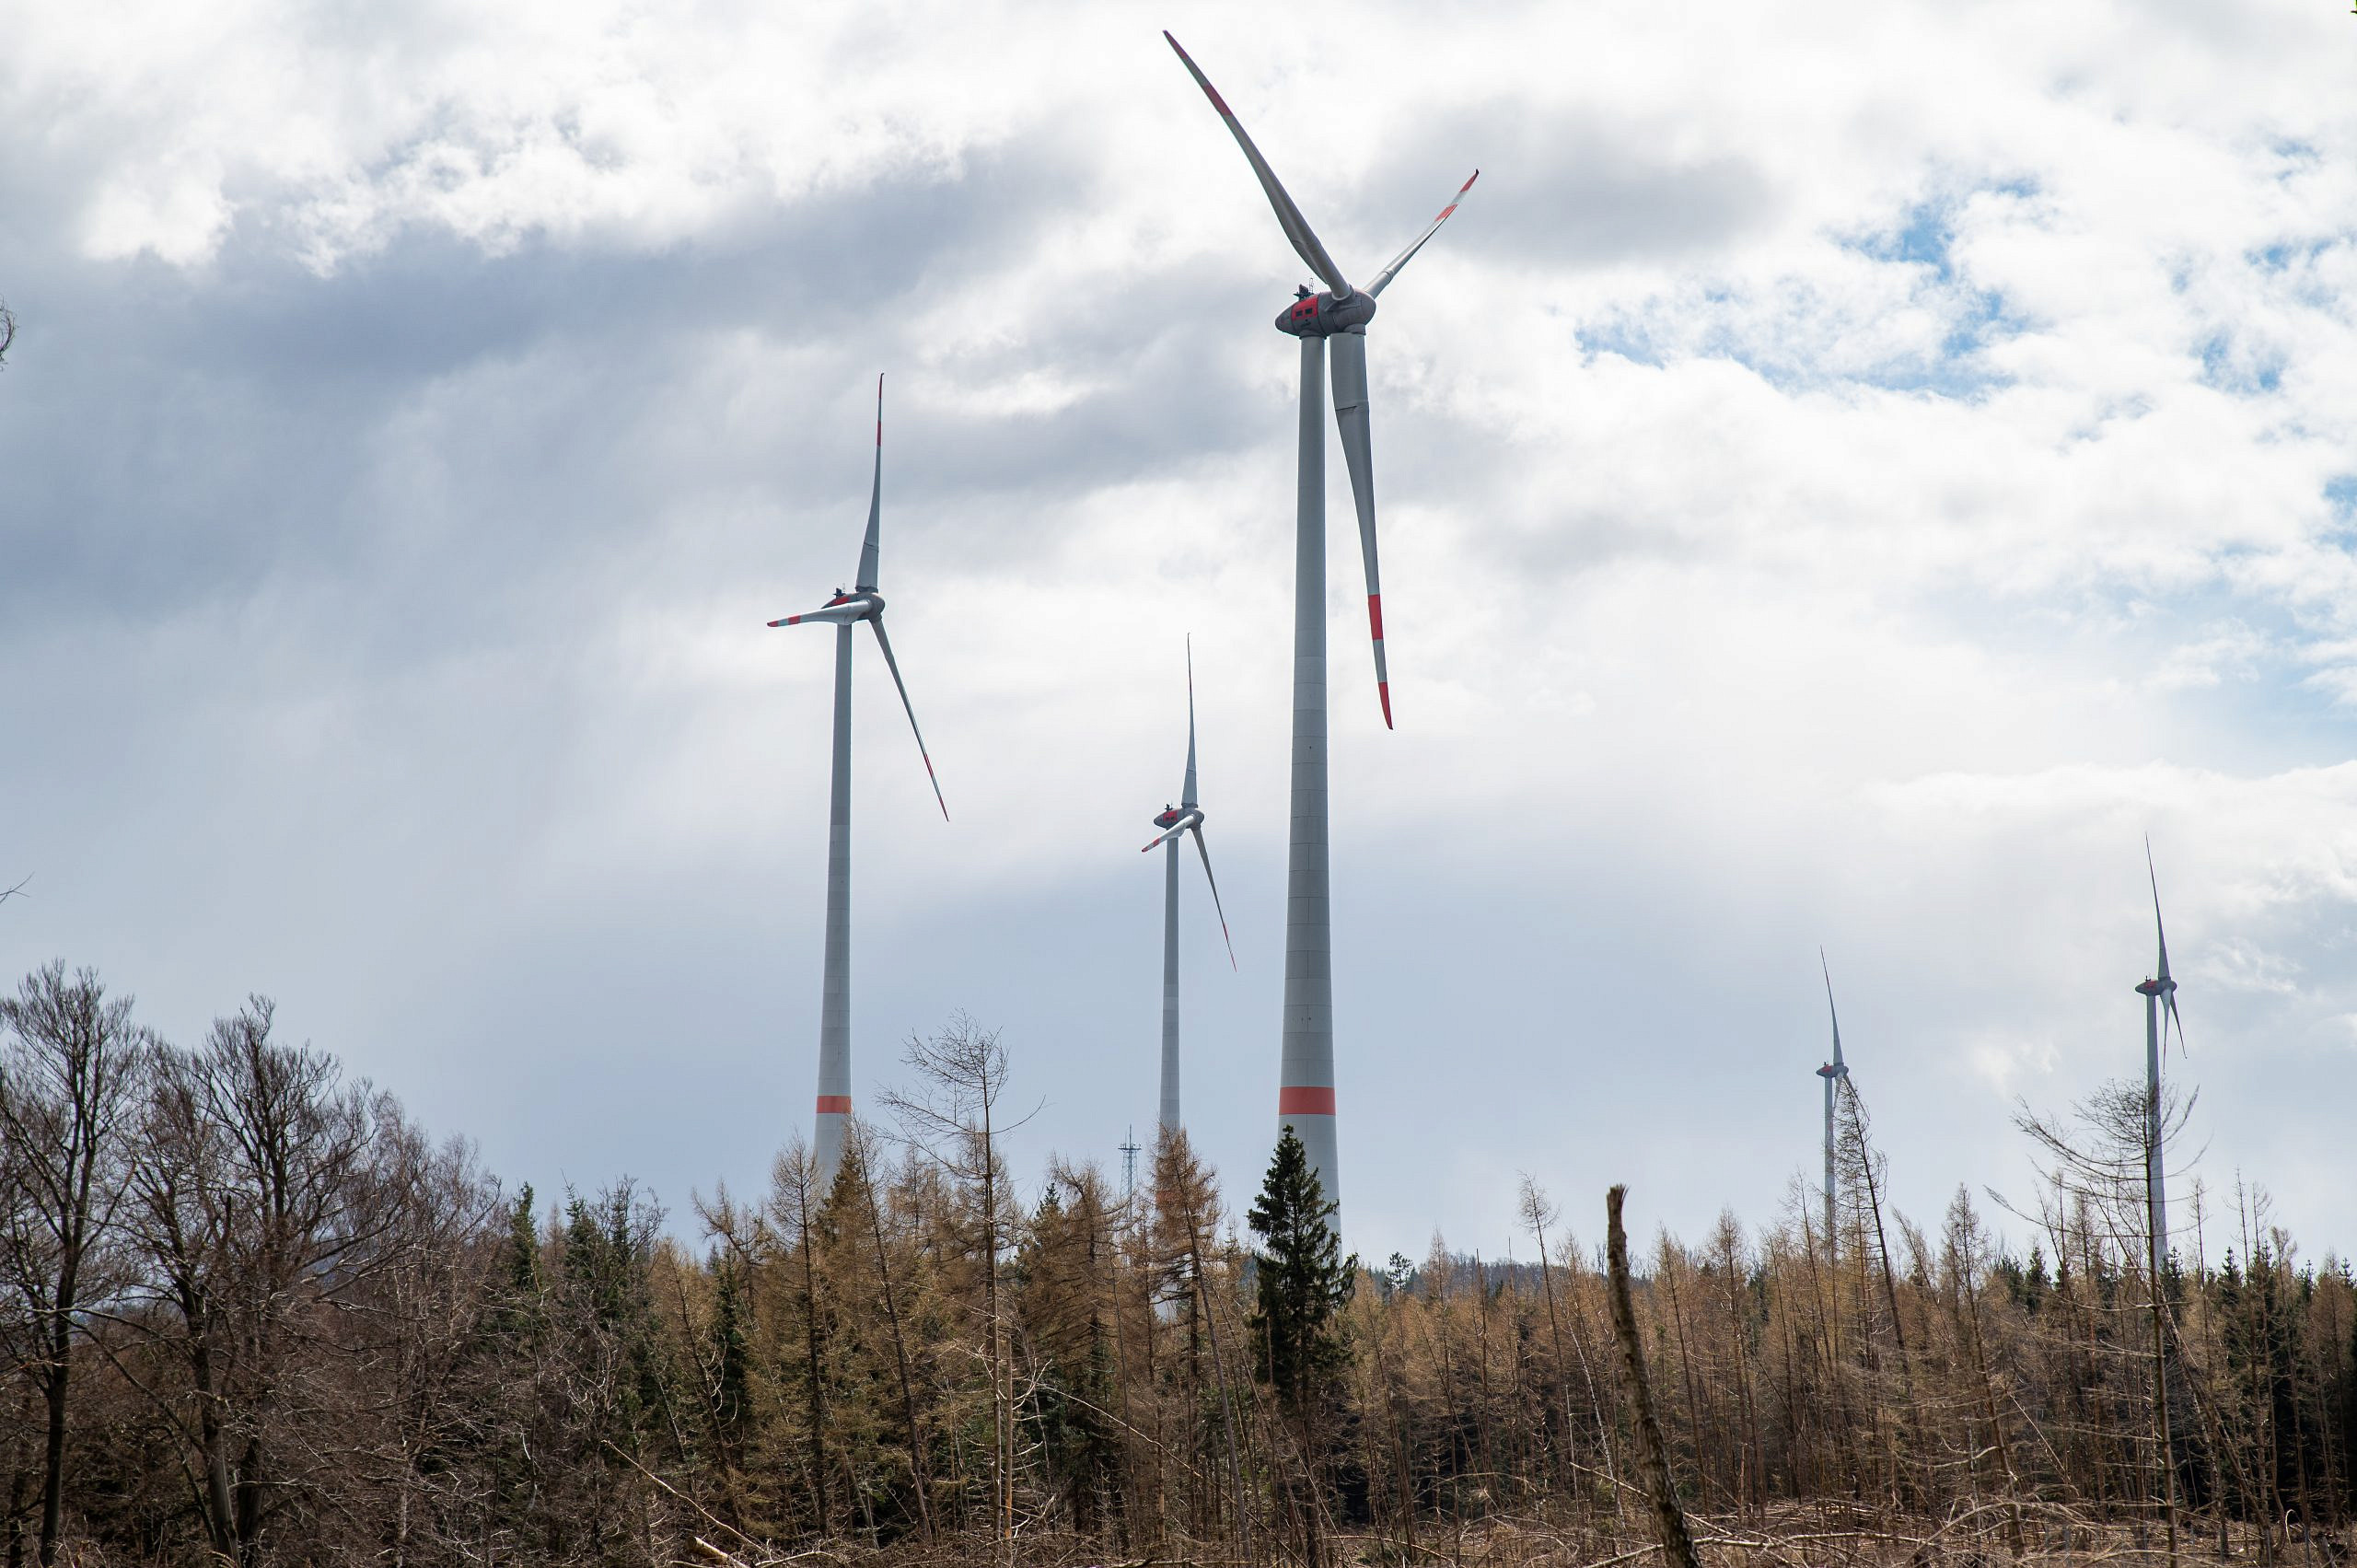 Windenergie aus dem Wald – Kampf gegen den Klimawandel zu Lasten des Naturschutz’?